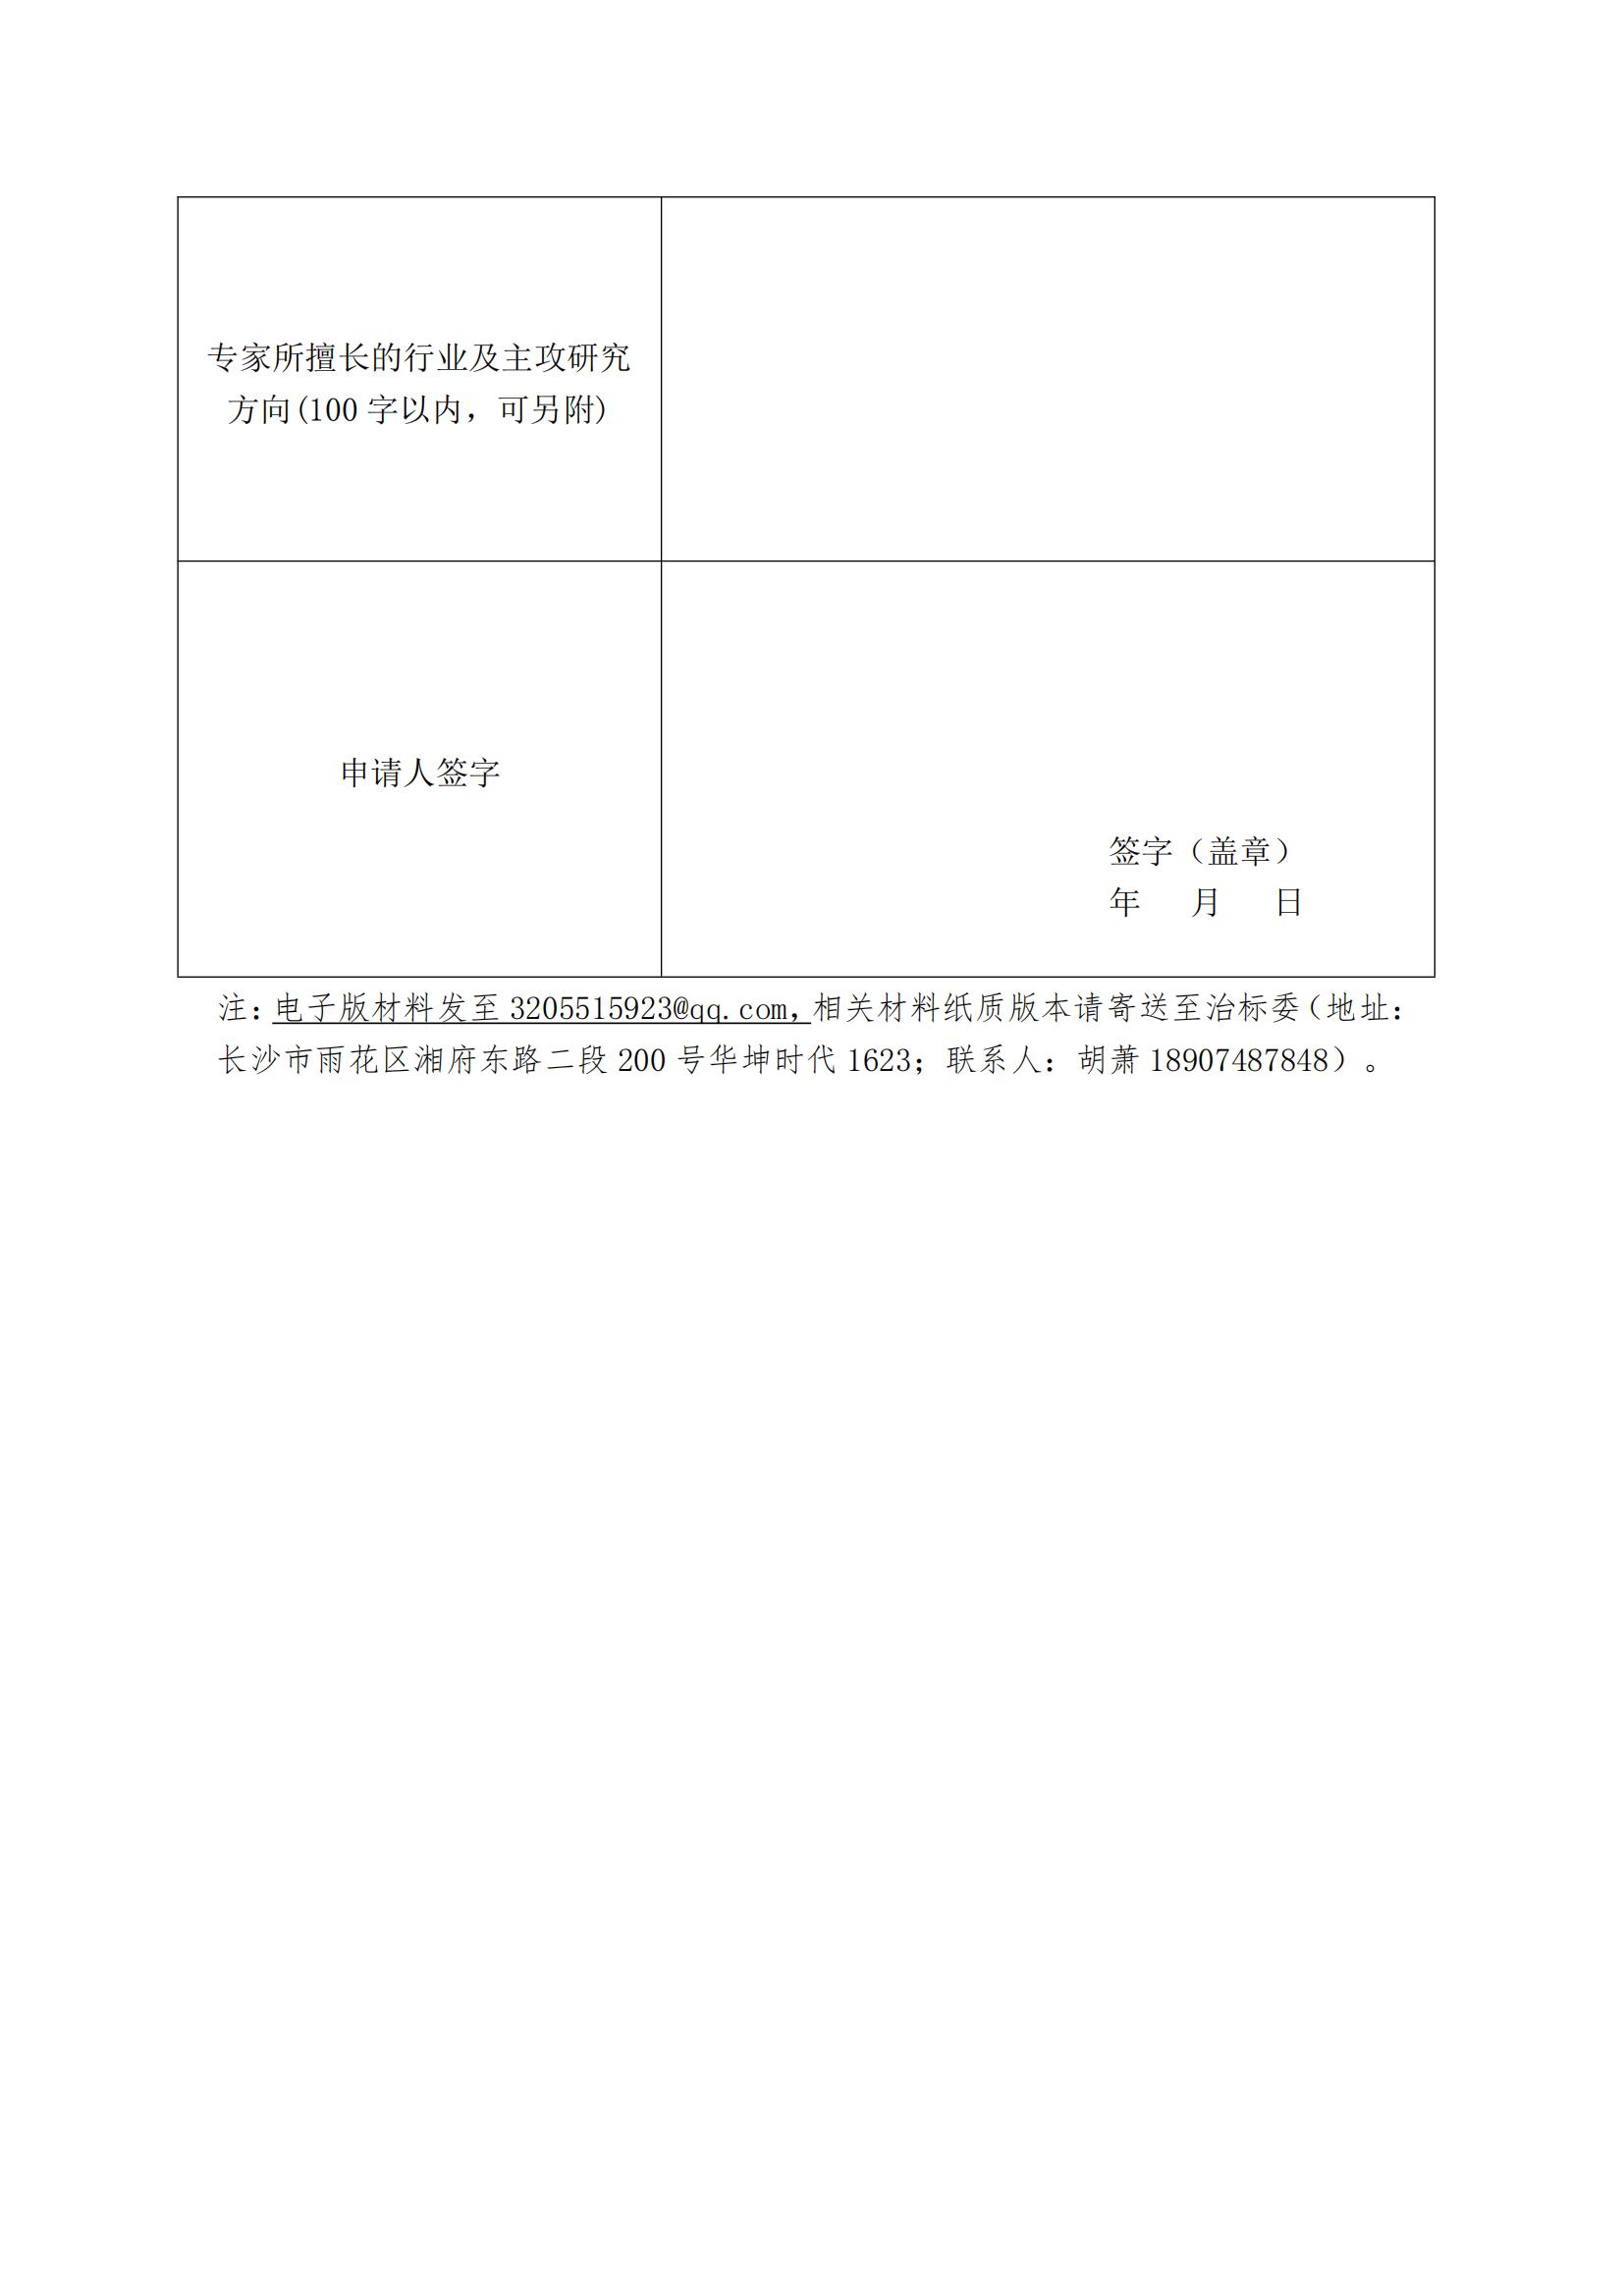 关于公开征集湖南省污染治理标准化技术委员会委员的函(1)_04.jpg